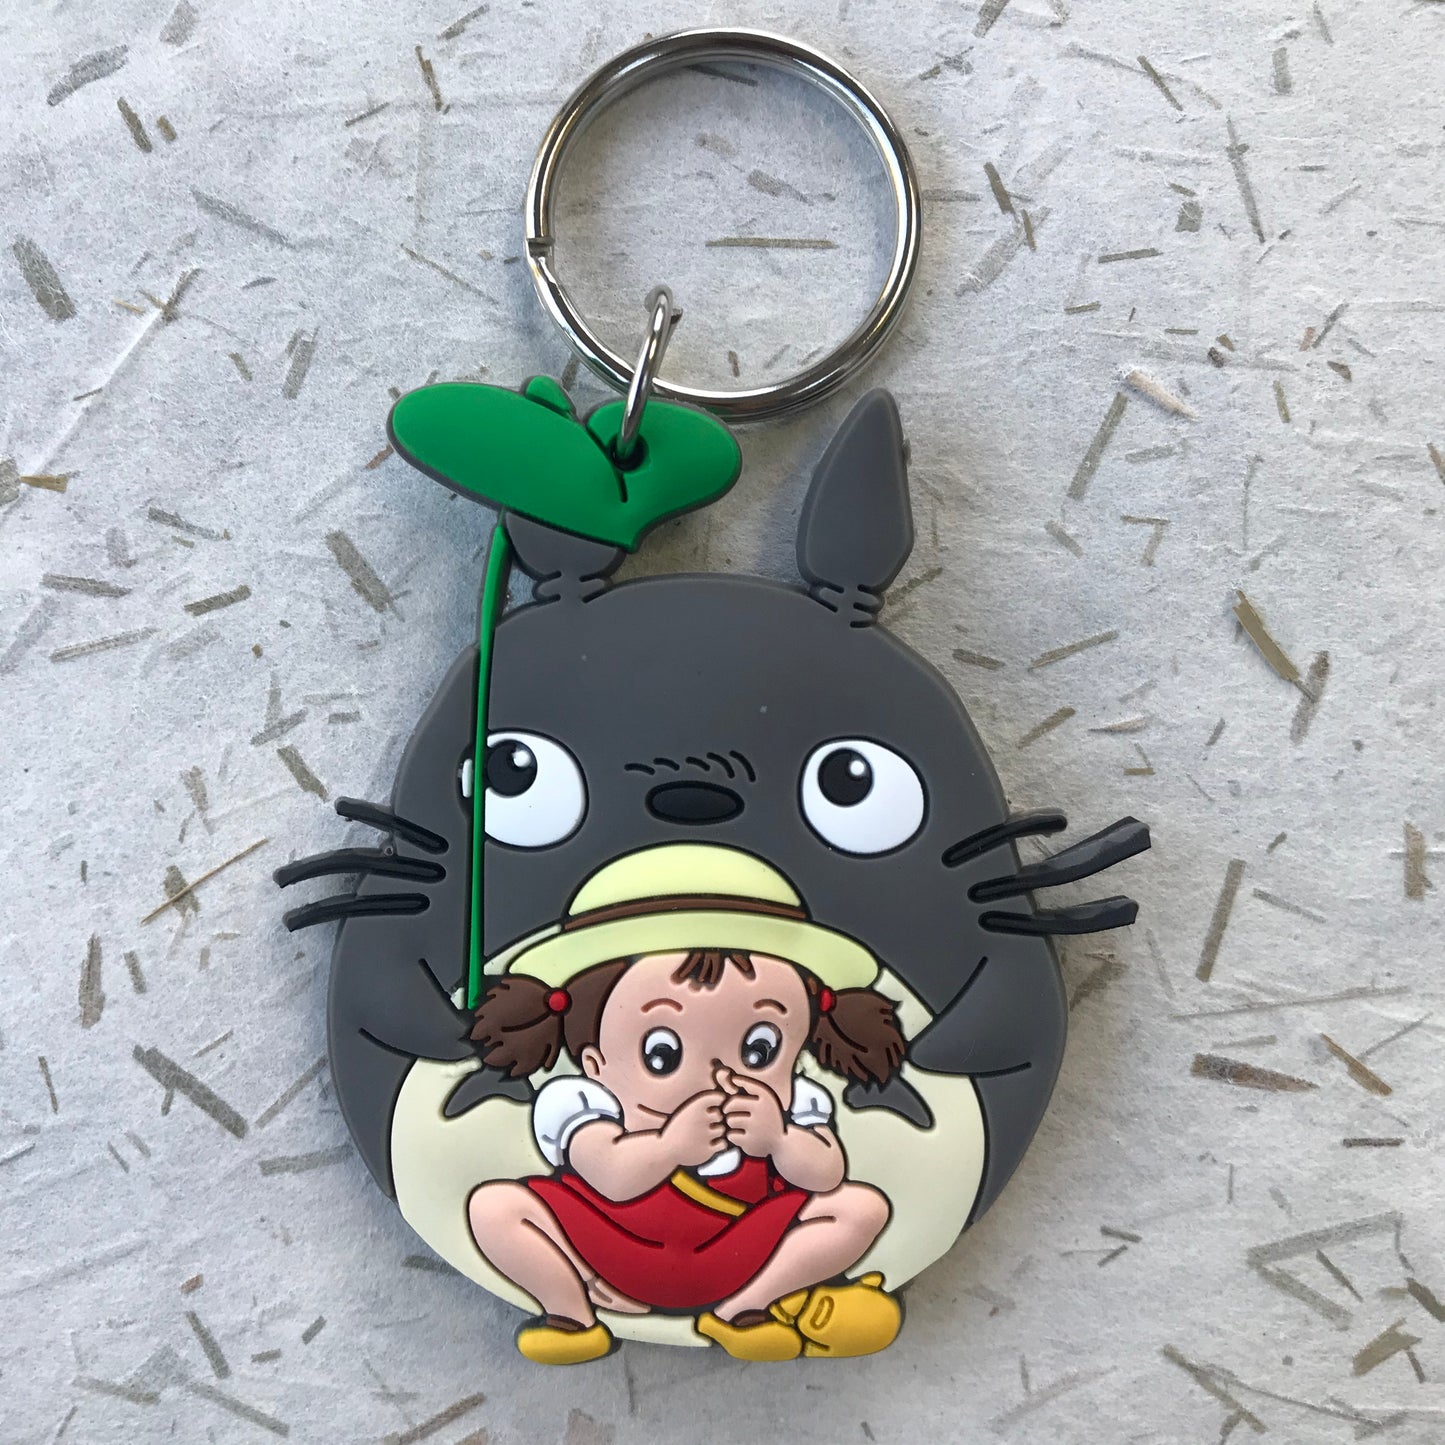 Studio Ghibli -keychain